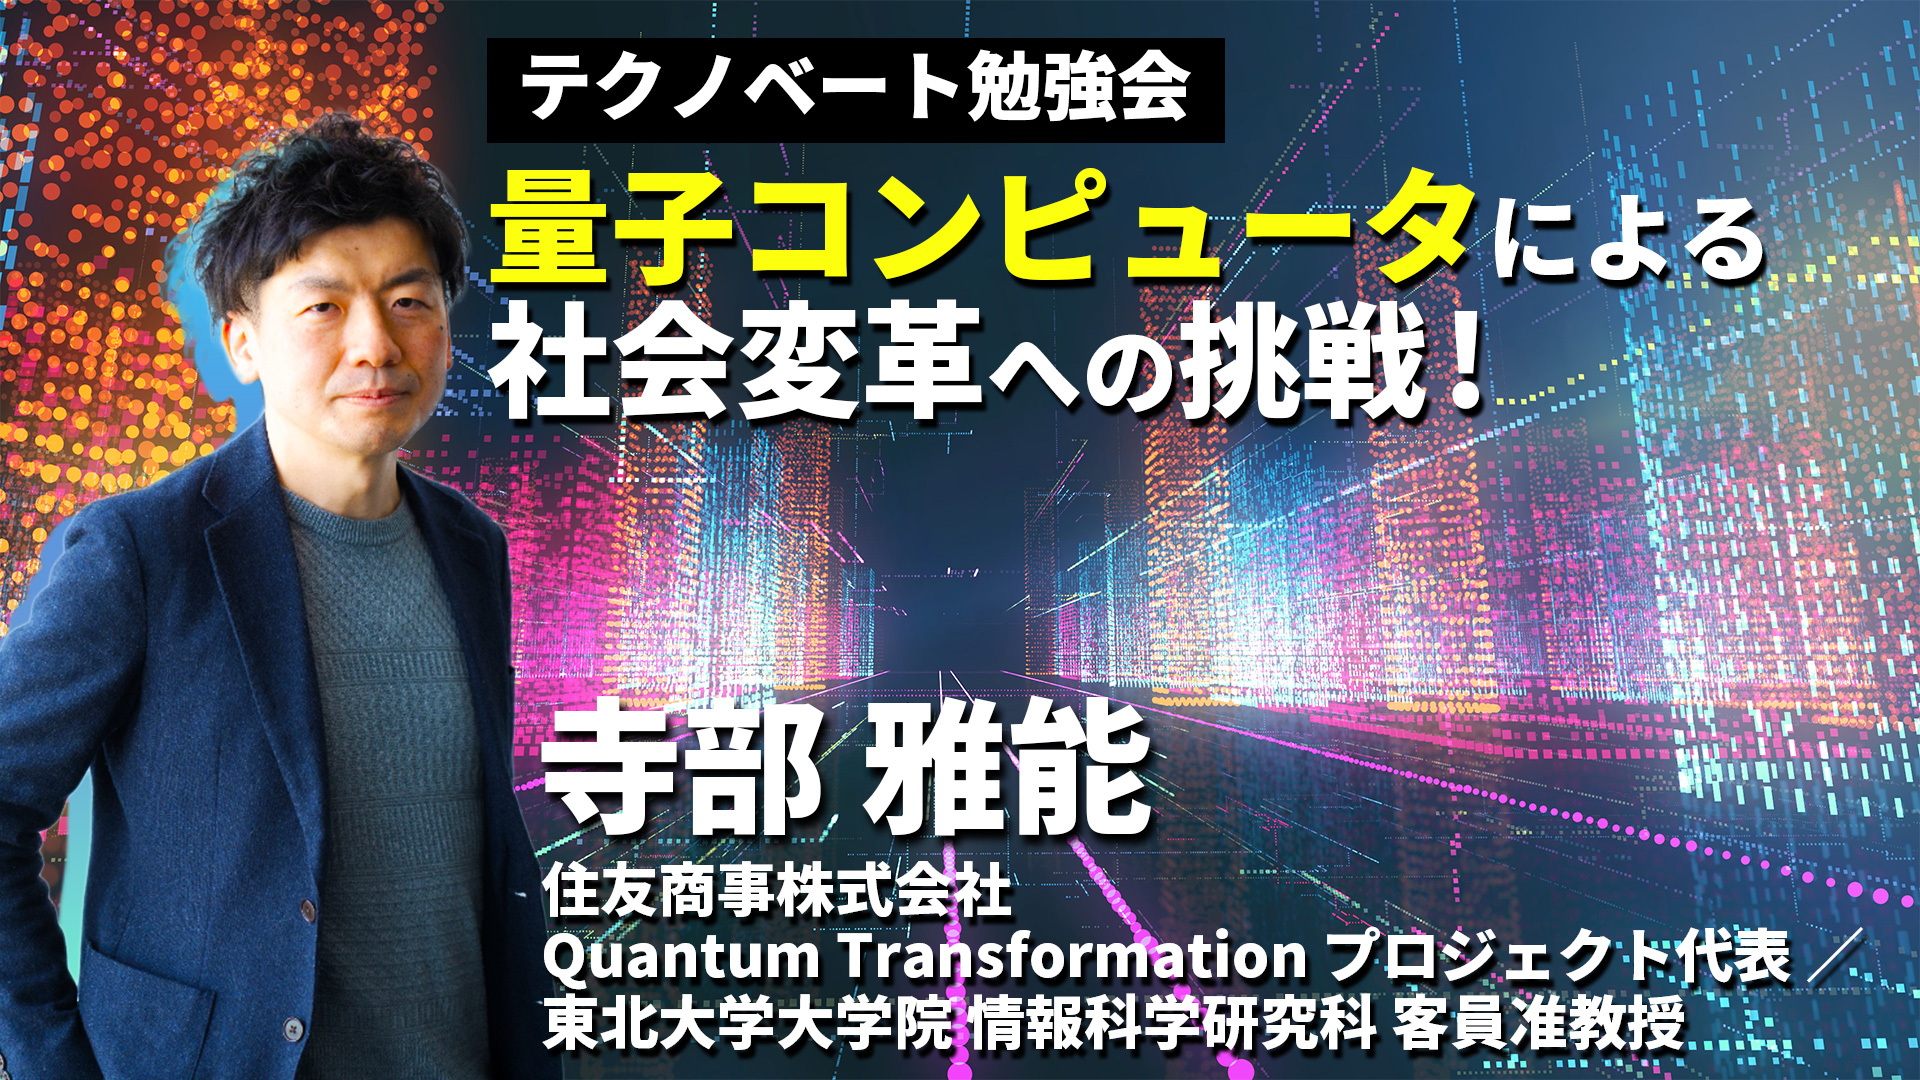 量子コンピュータによる社会変革への挑戦！〜寺部雅能(住友商事･QuantumTransformationプロジェクト代表)